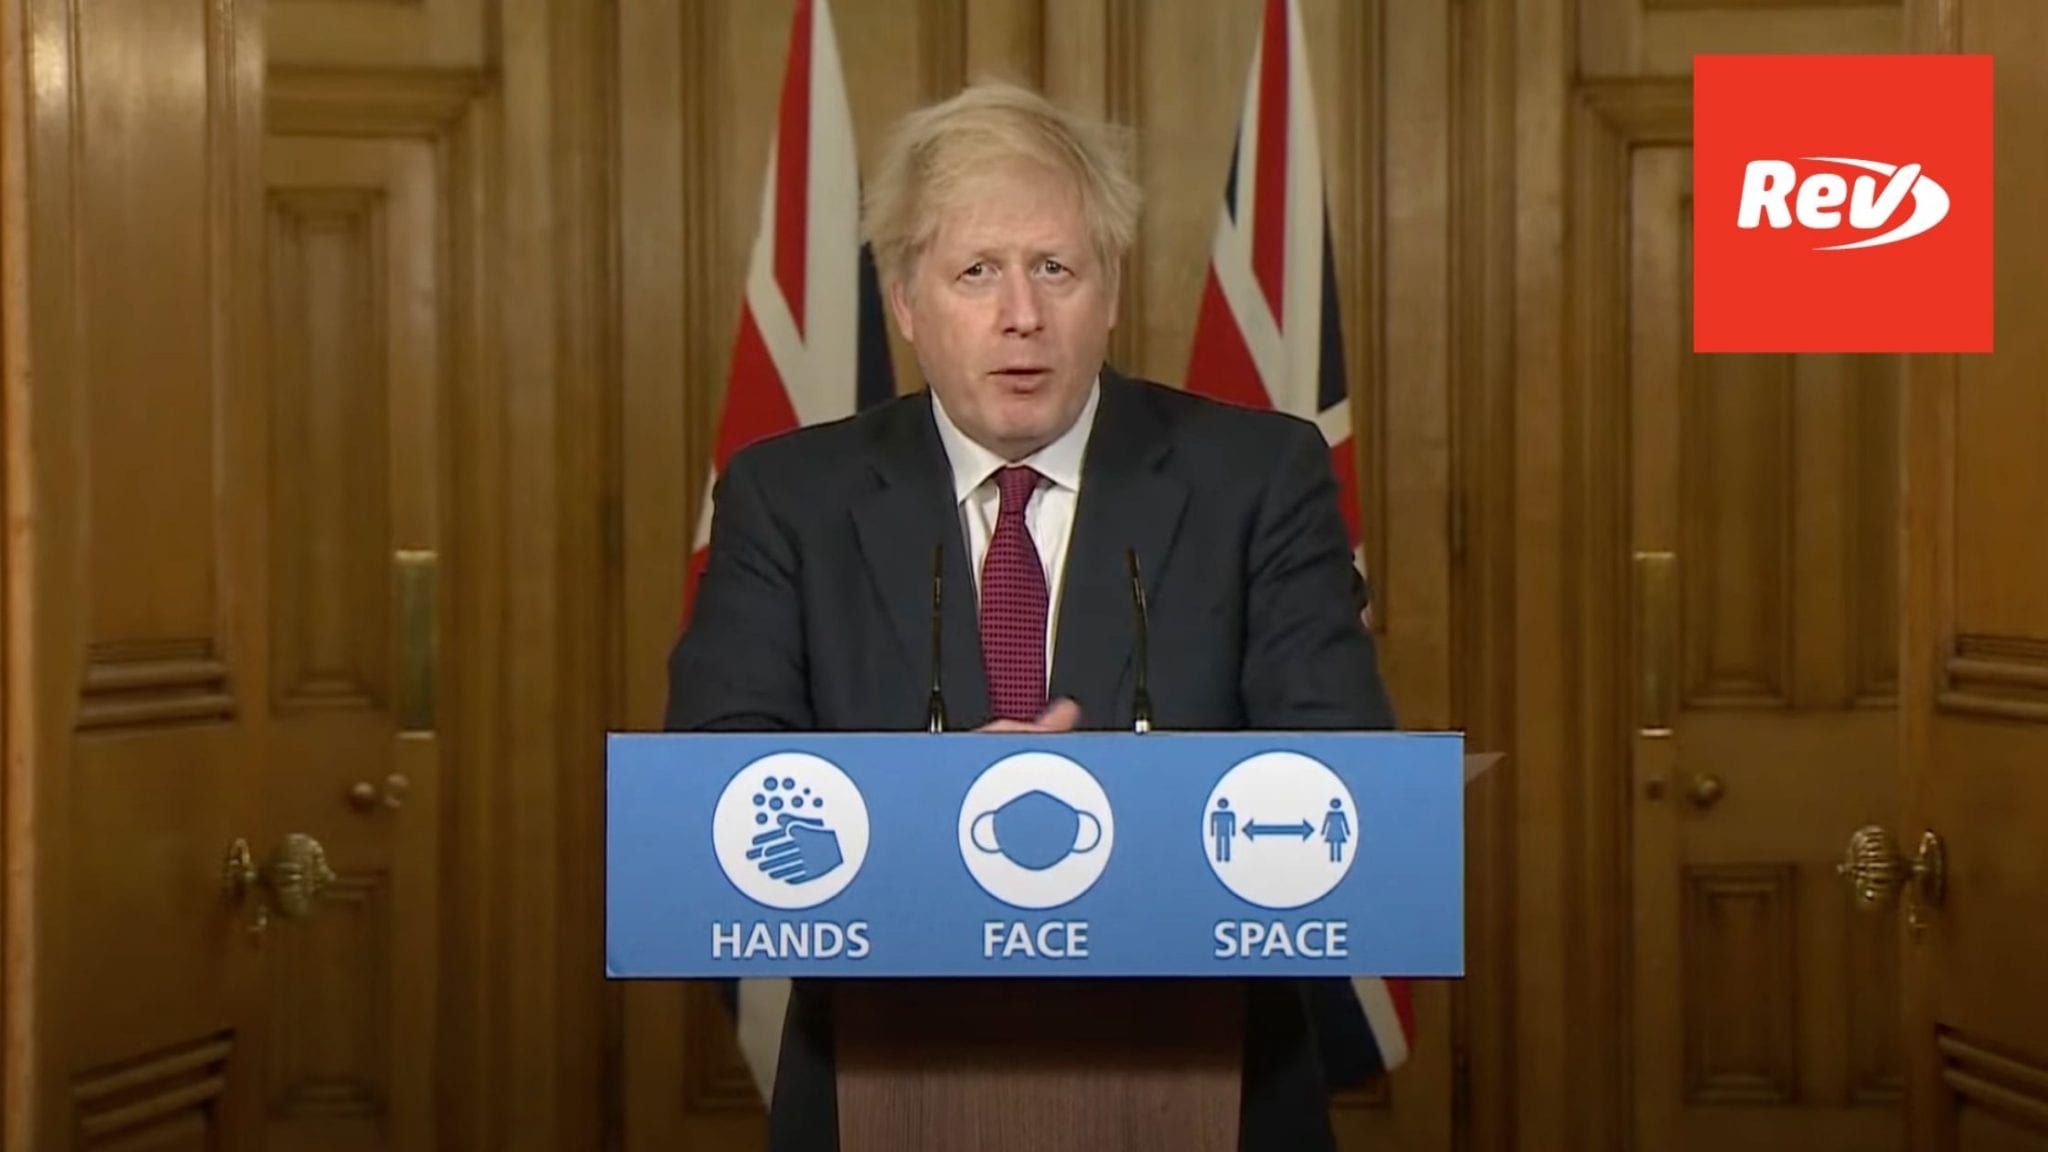 Boris Johnson COVID Press Conference December 19